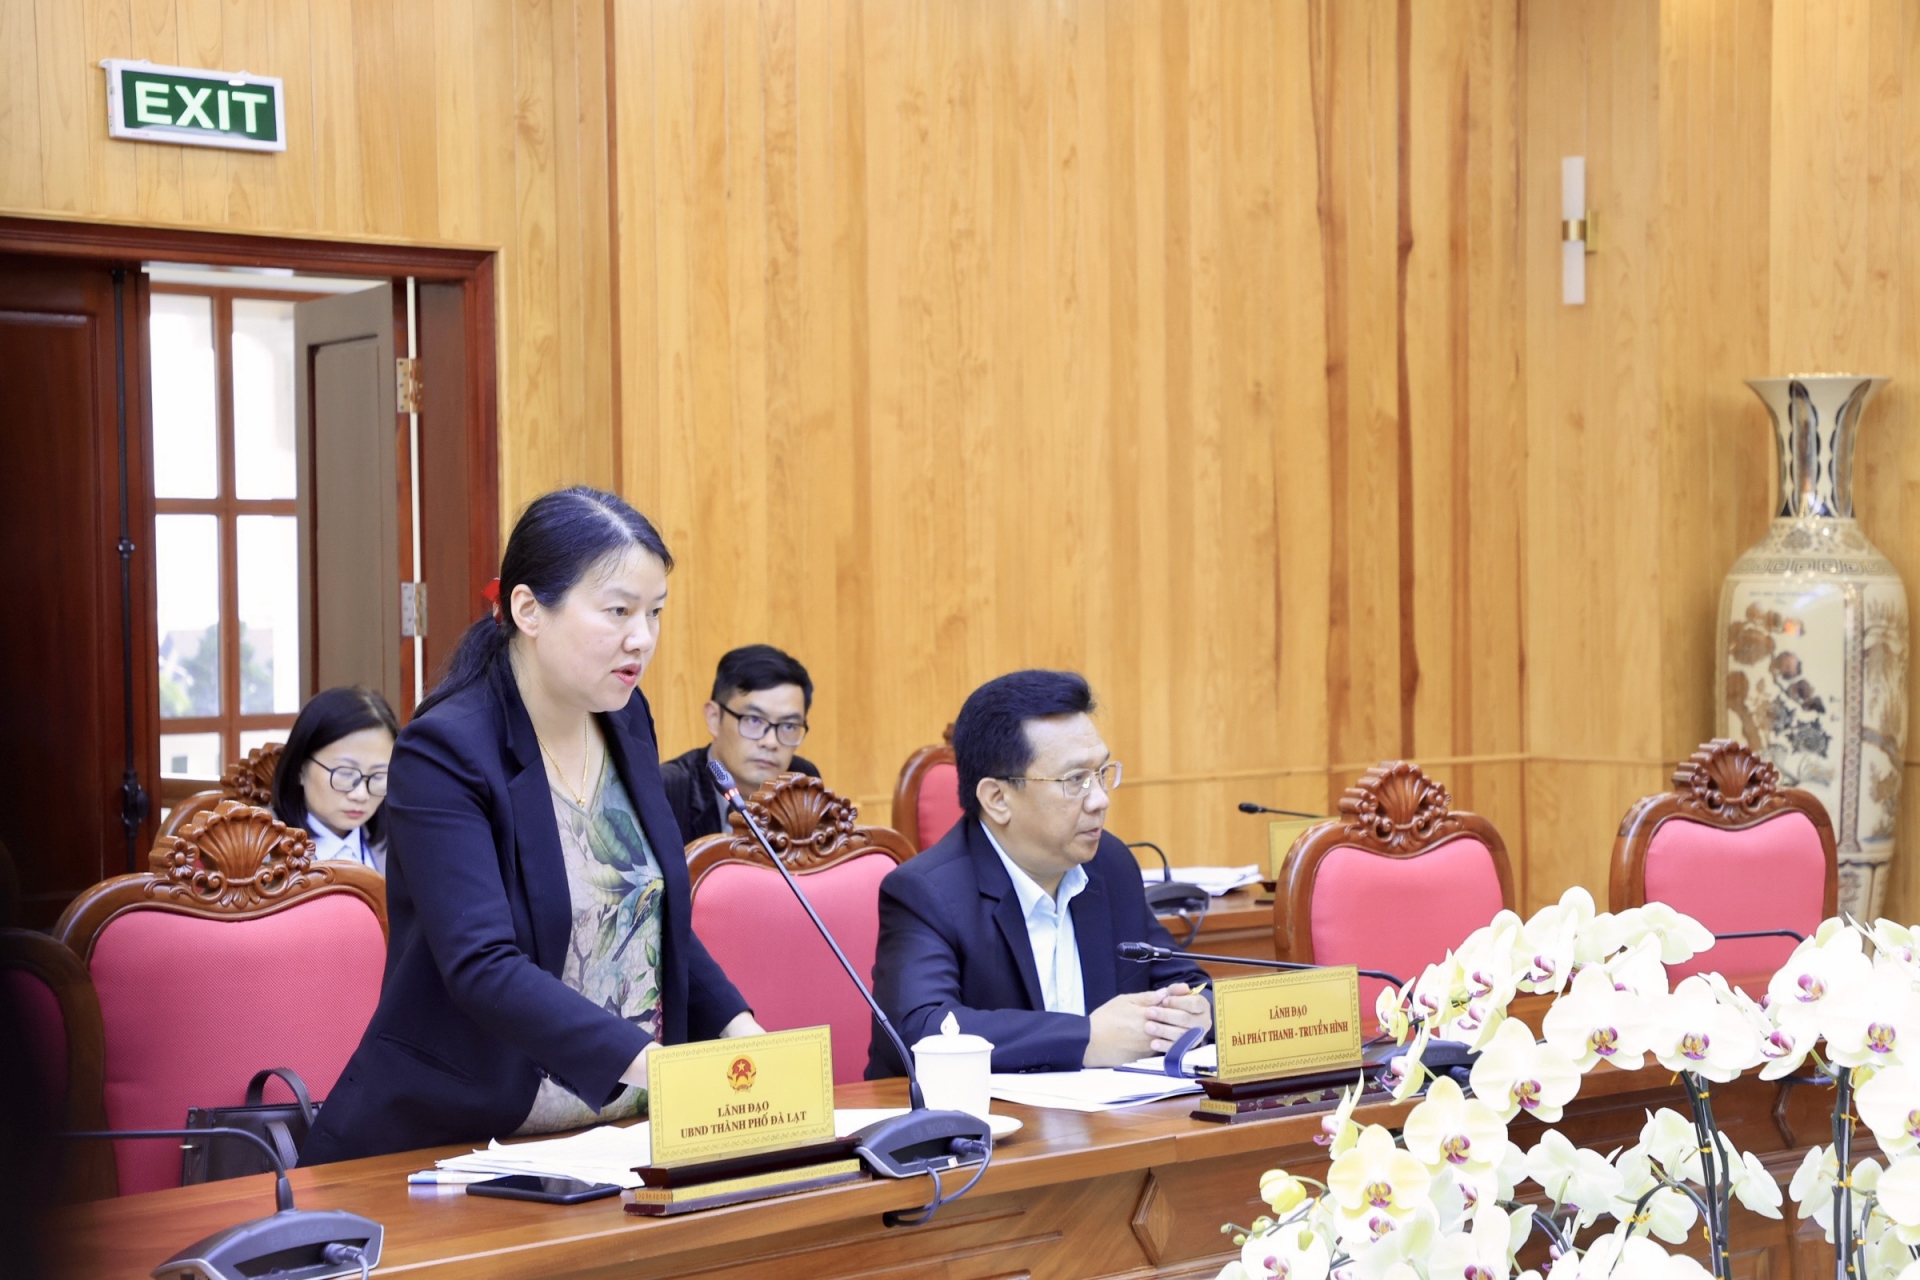 Bà Trần Thị Vũ Loan – Phó Chủ tịch UBND thành phố Đà Lạt báo cáo về công tác chuẩn bị nhằm đảm bảo an ninh trật tự, vệ sinh môi trường, các mặt bằng tổ chức sự kiện…